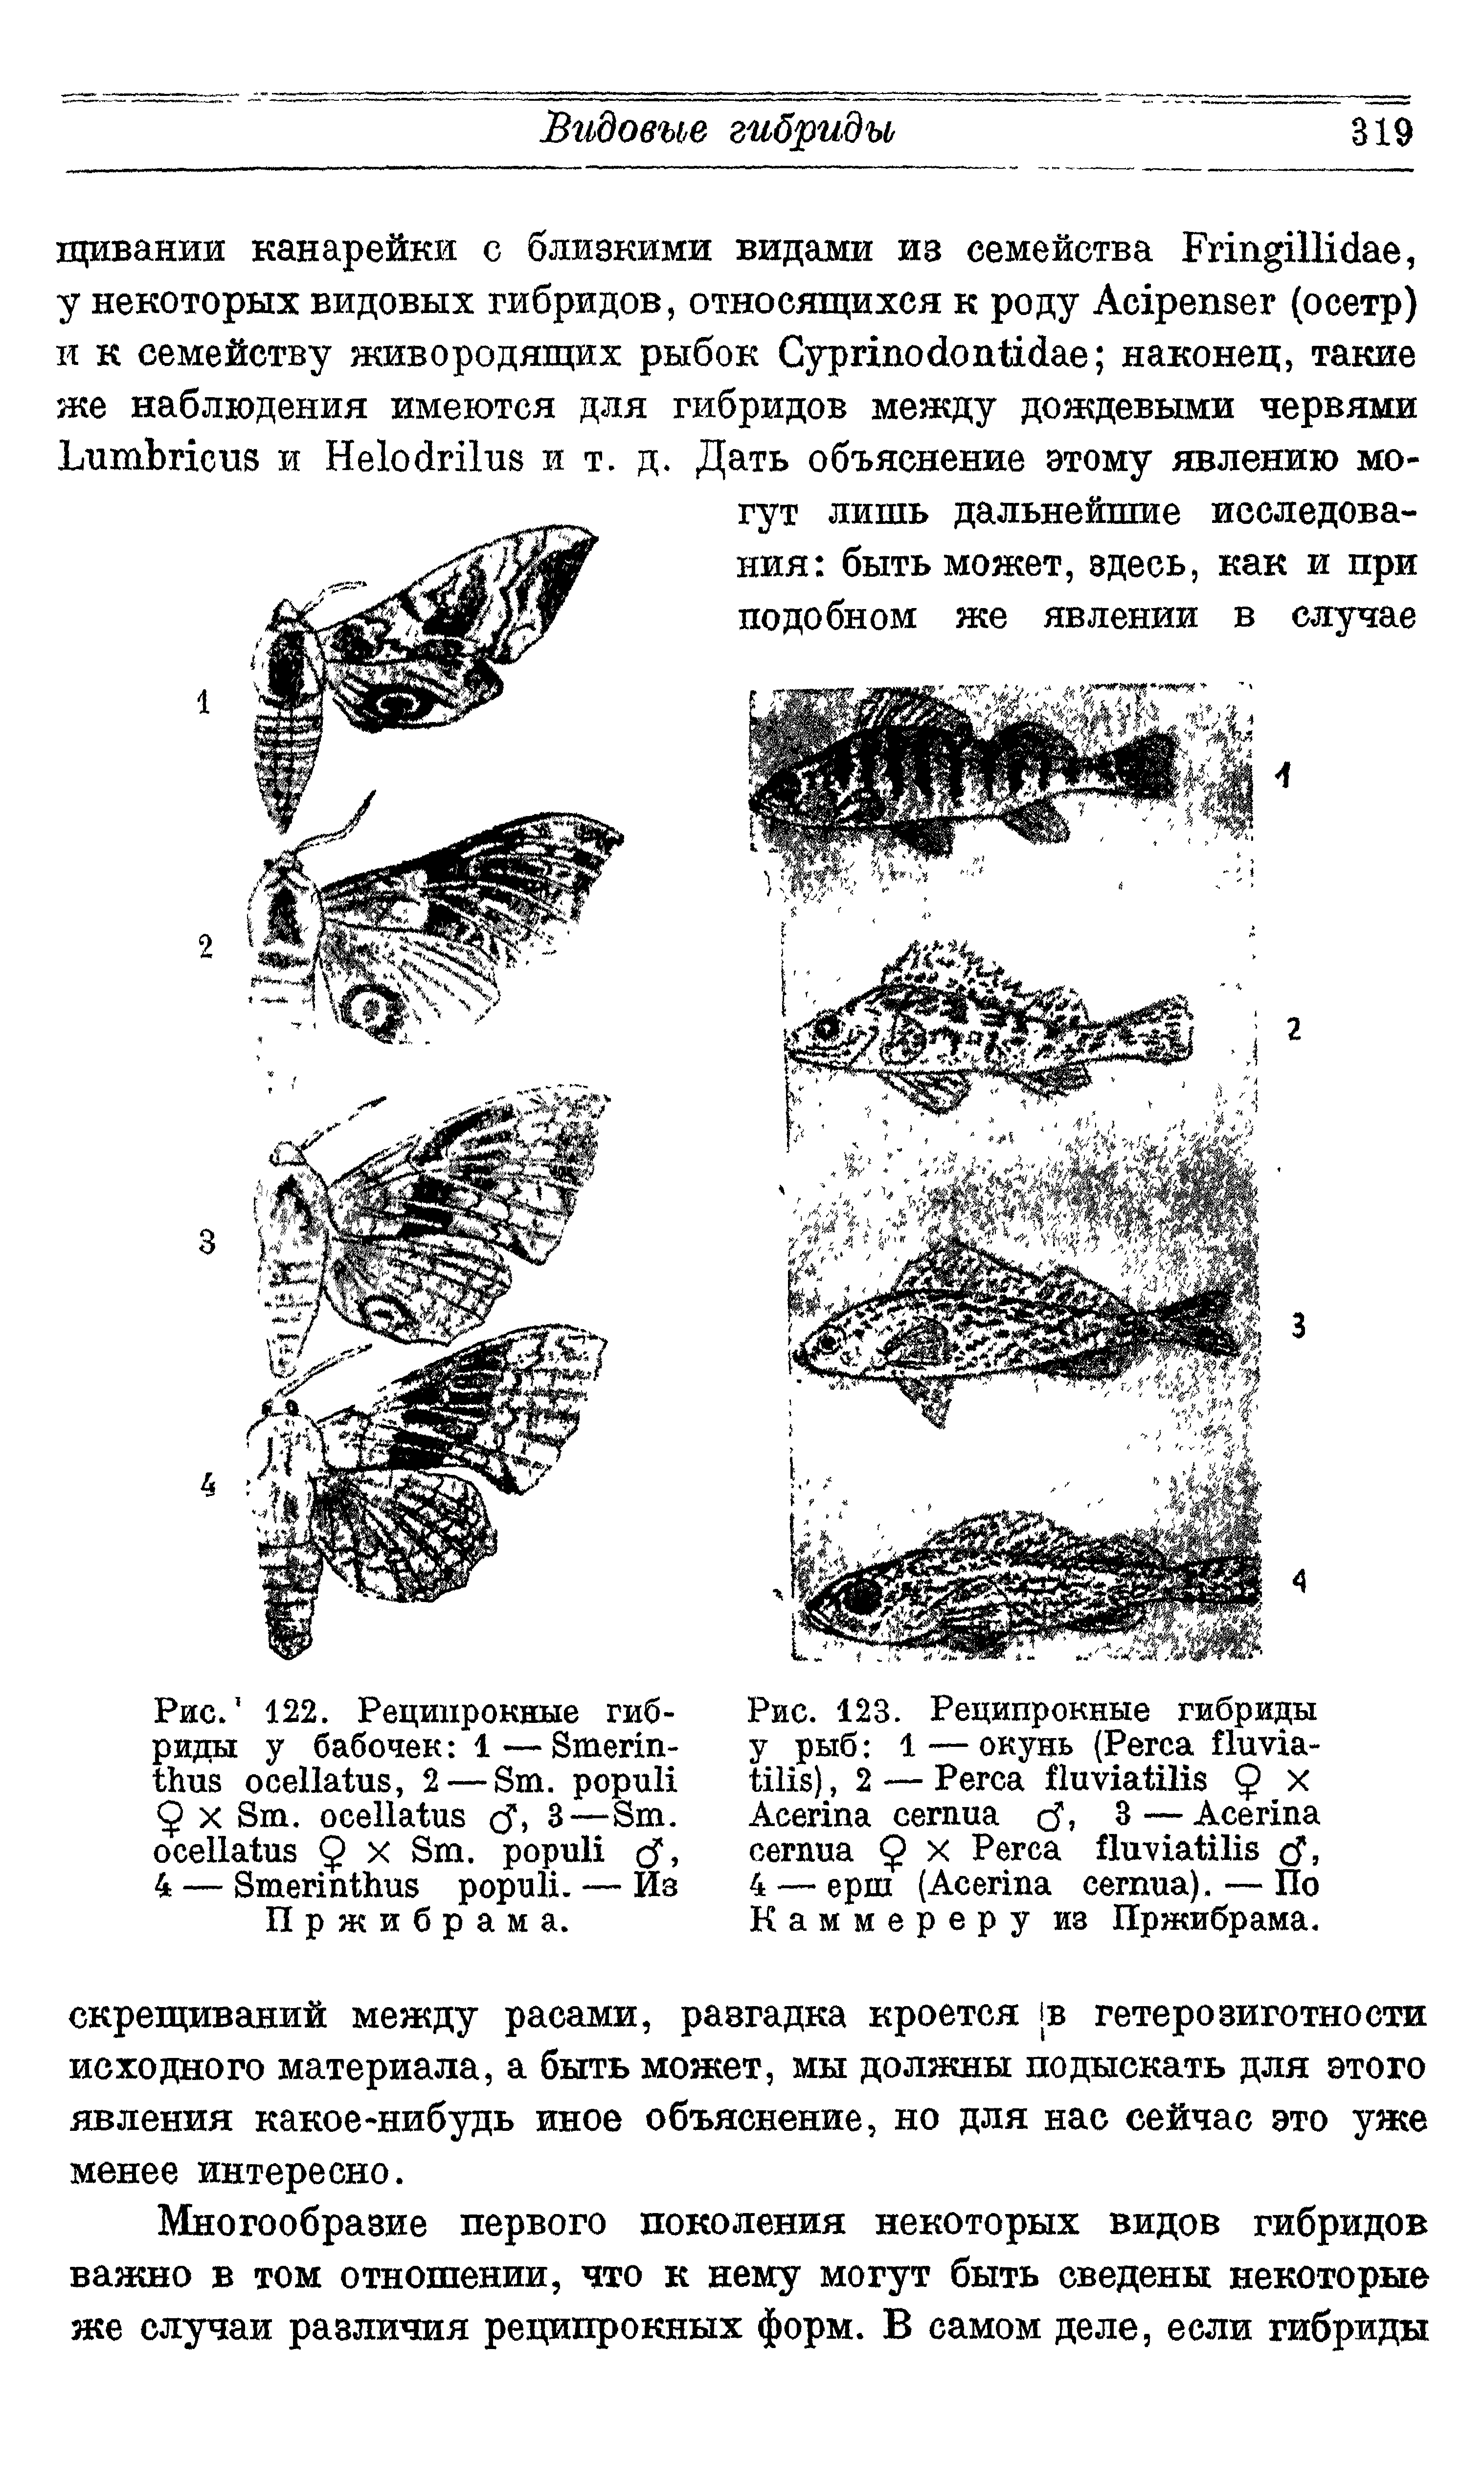 Рис. 123. Реципрокные гибриды у рыб 1 — окунь (P - ), 2 — P Q X A 3 — A Q X P T, 4 — ерш (A ). — По Каммереру из Пржибрама.